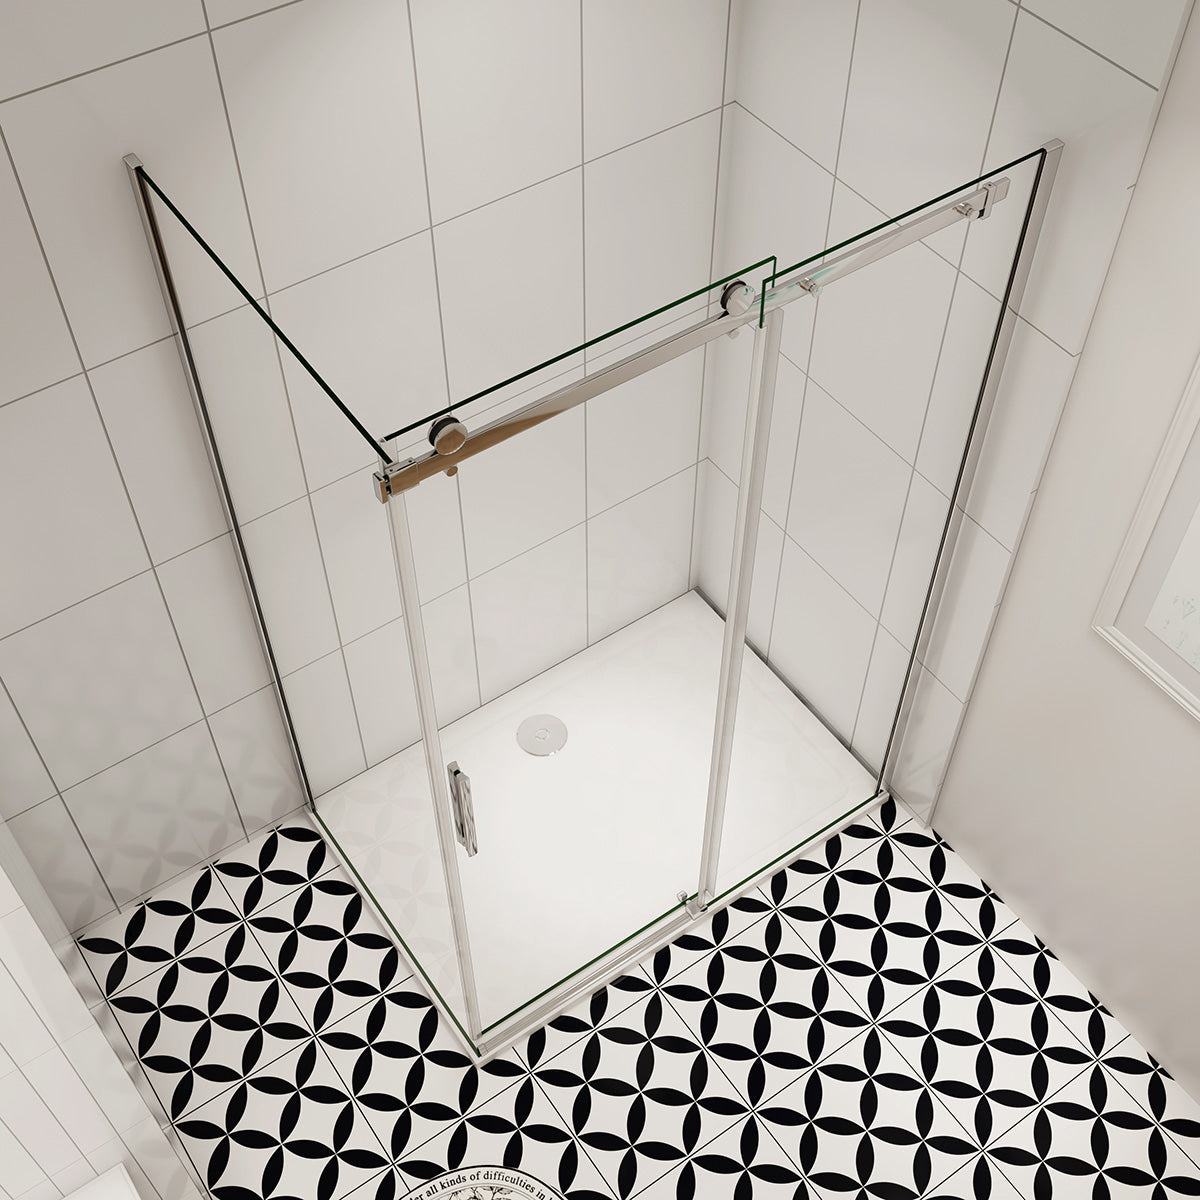 Duschtür+Seitenwand Dusche Duschabtrennung 110x90 cm Glasstärke 6mm Schiebetür Duschkabine